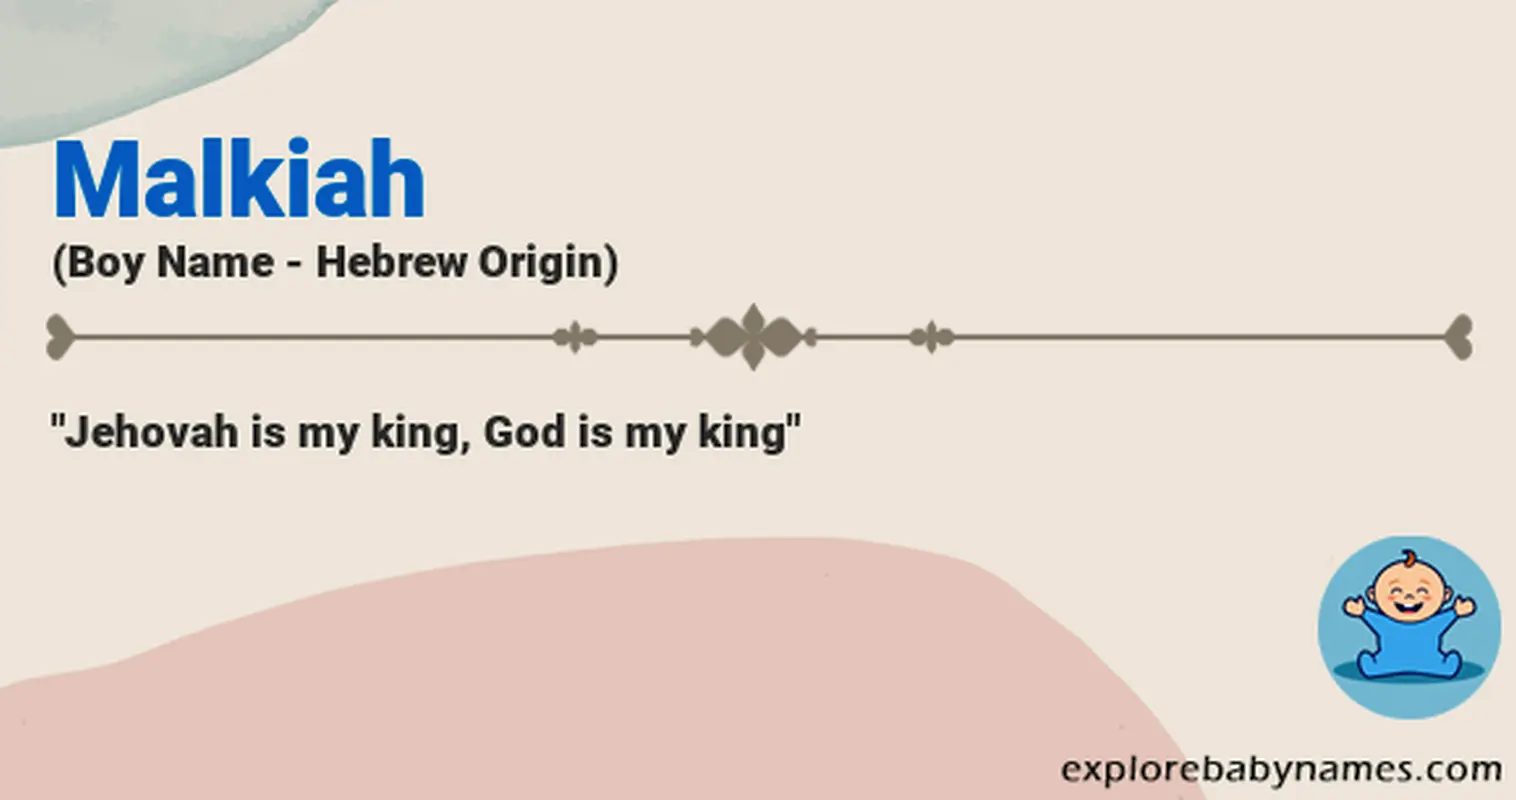 Meaning of Malkiah